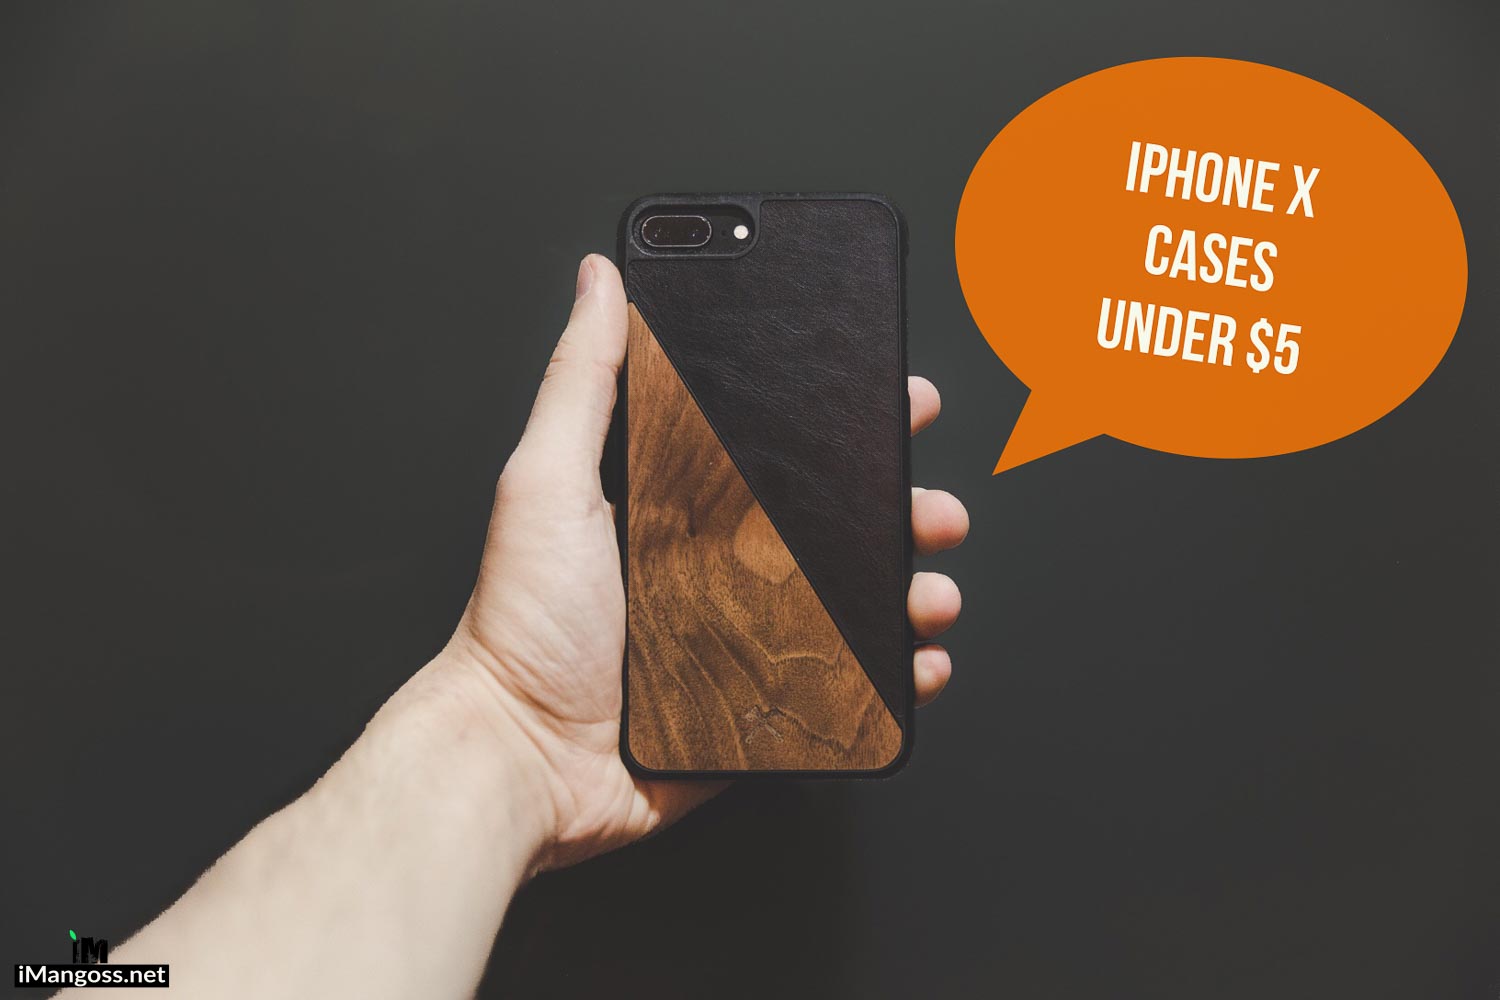 iphone x cases under 5